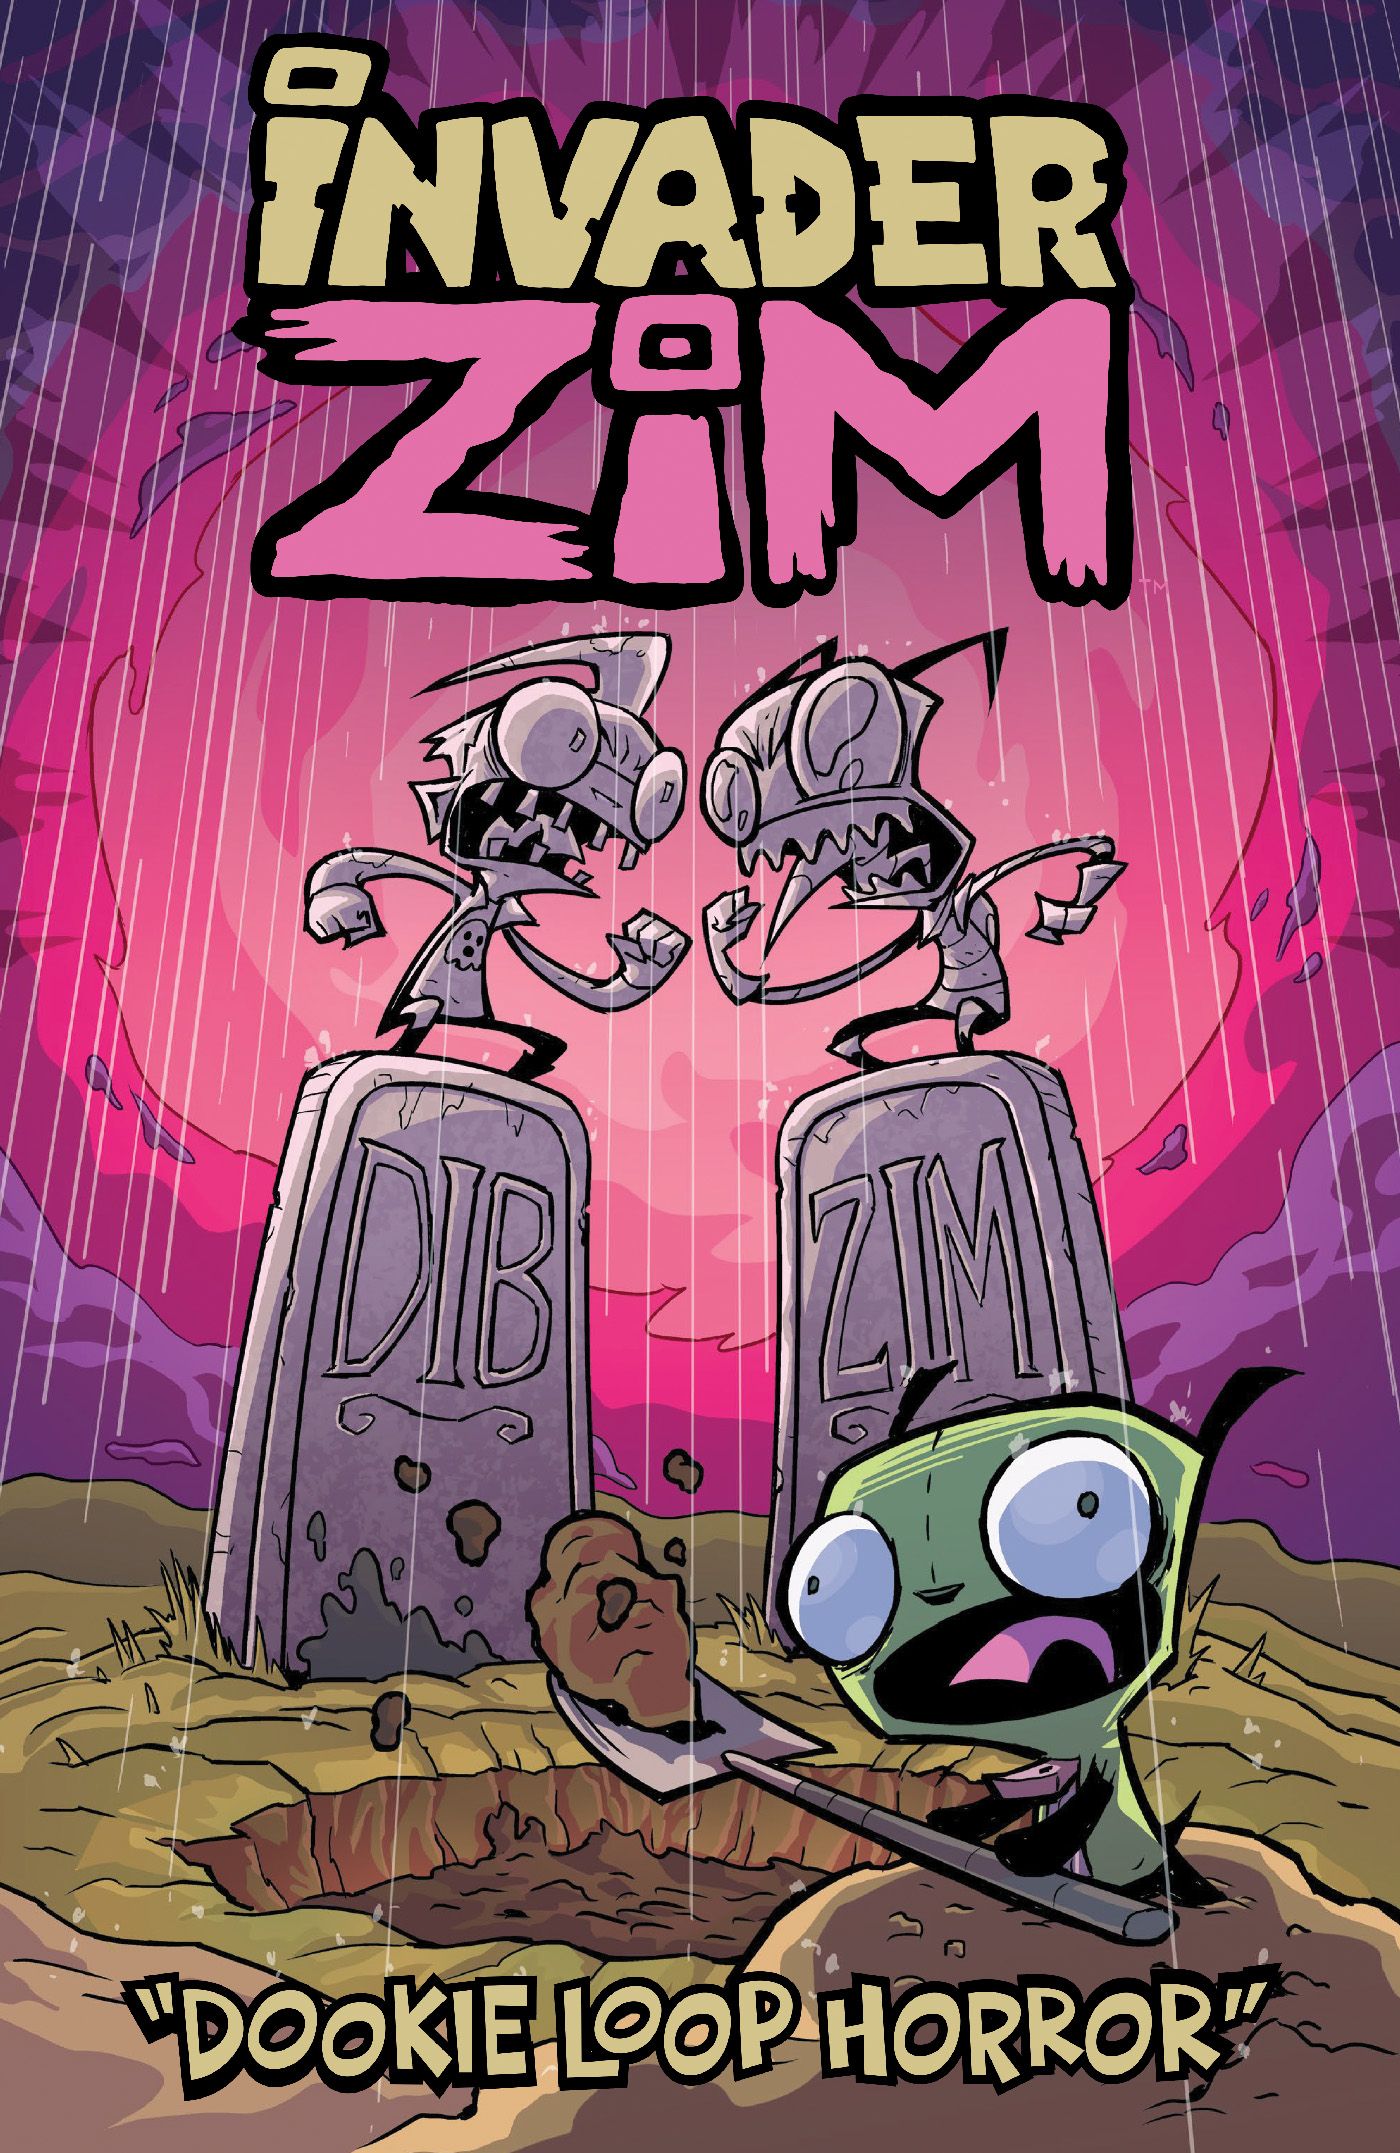 ZIM dookie loop horror cover